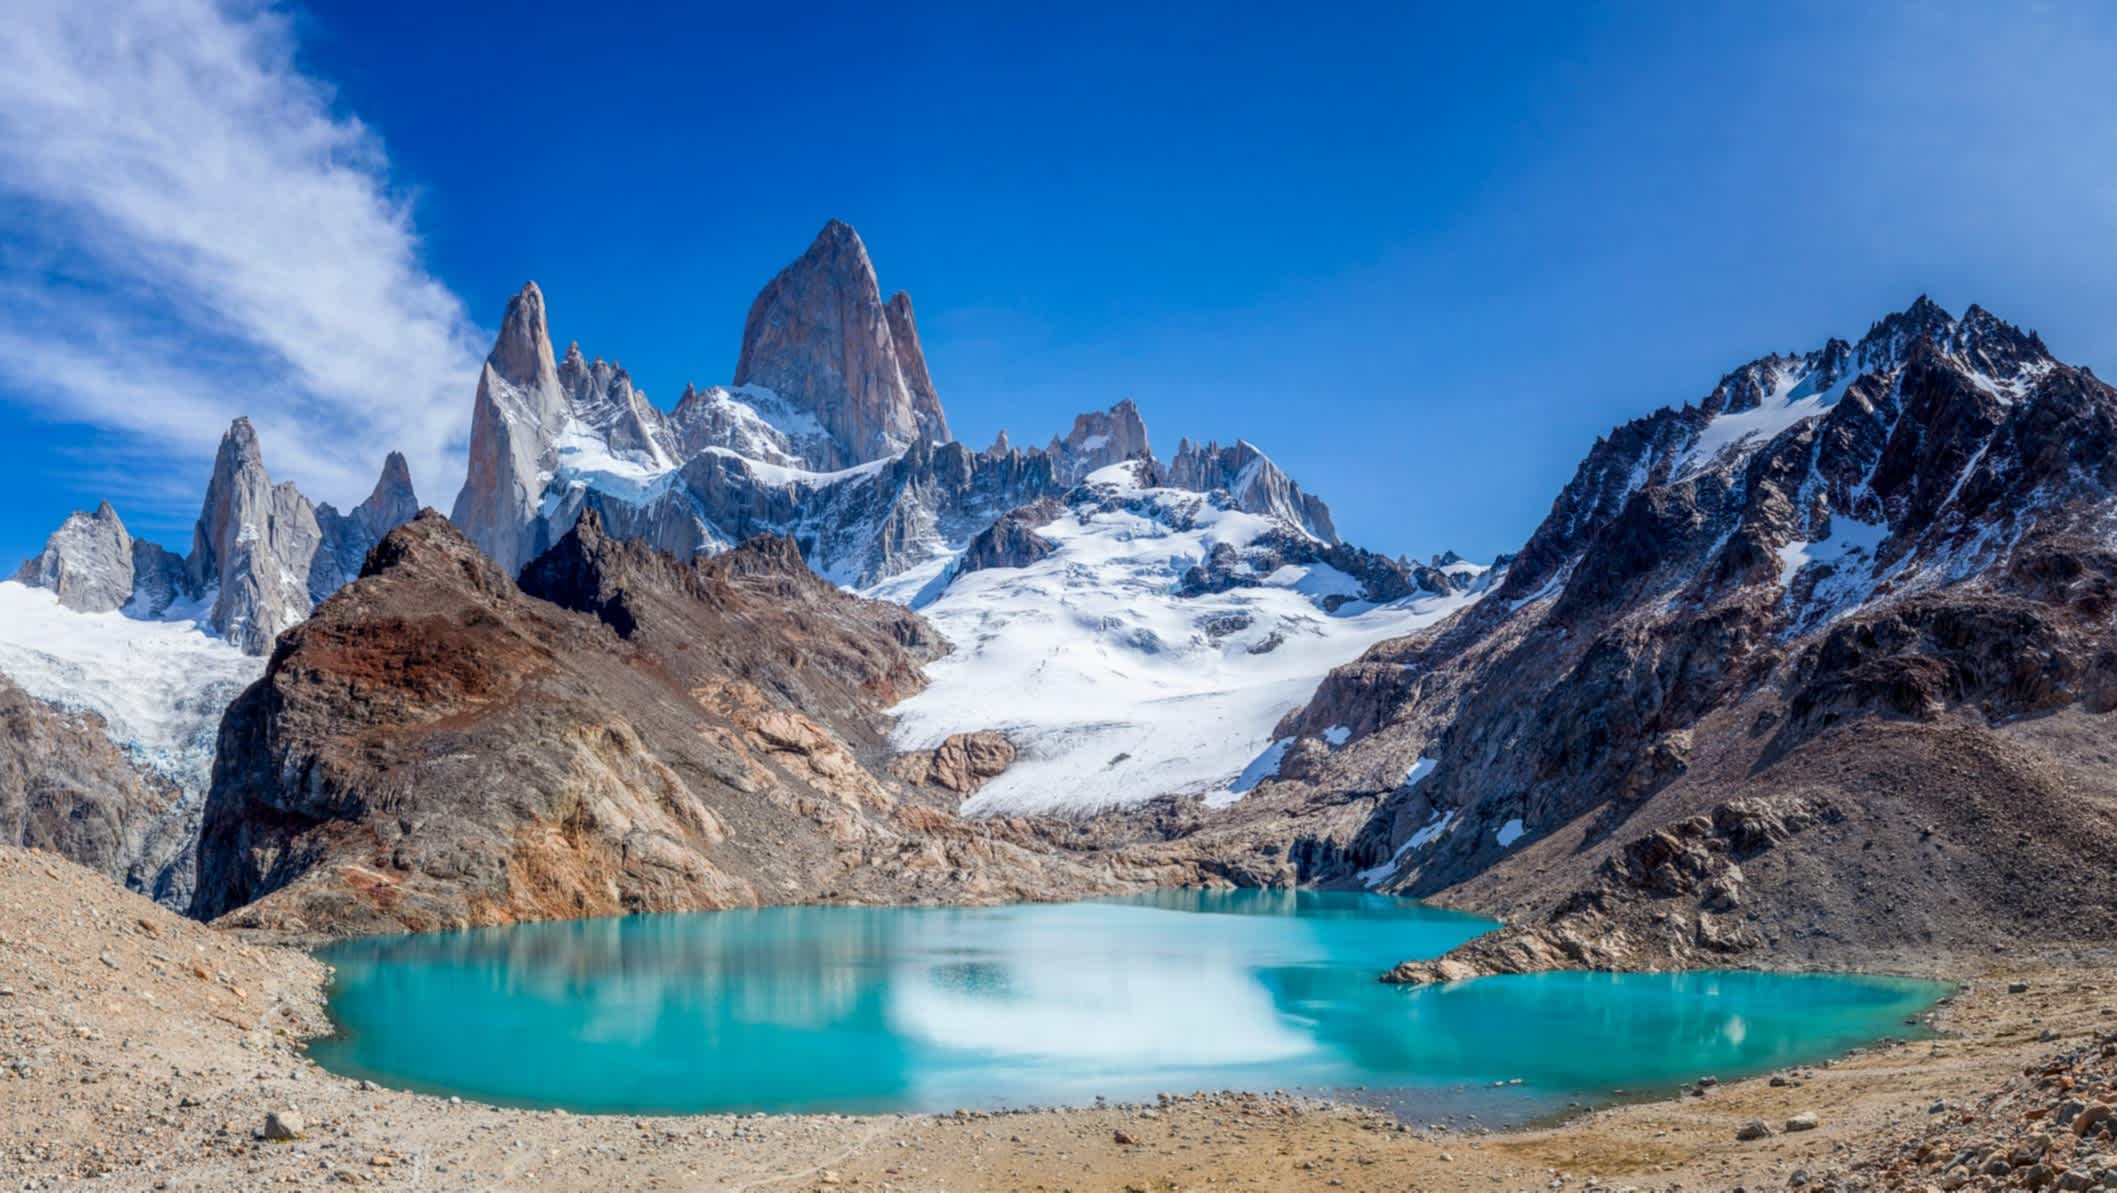 Laguna de los Tres près du village argentin d'El Chalten en Argentine.